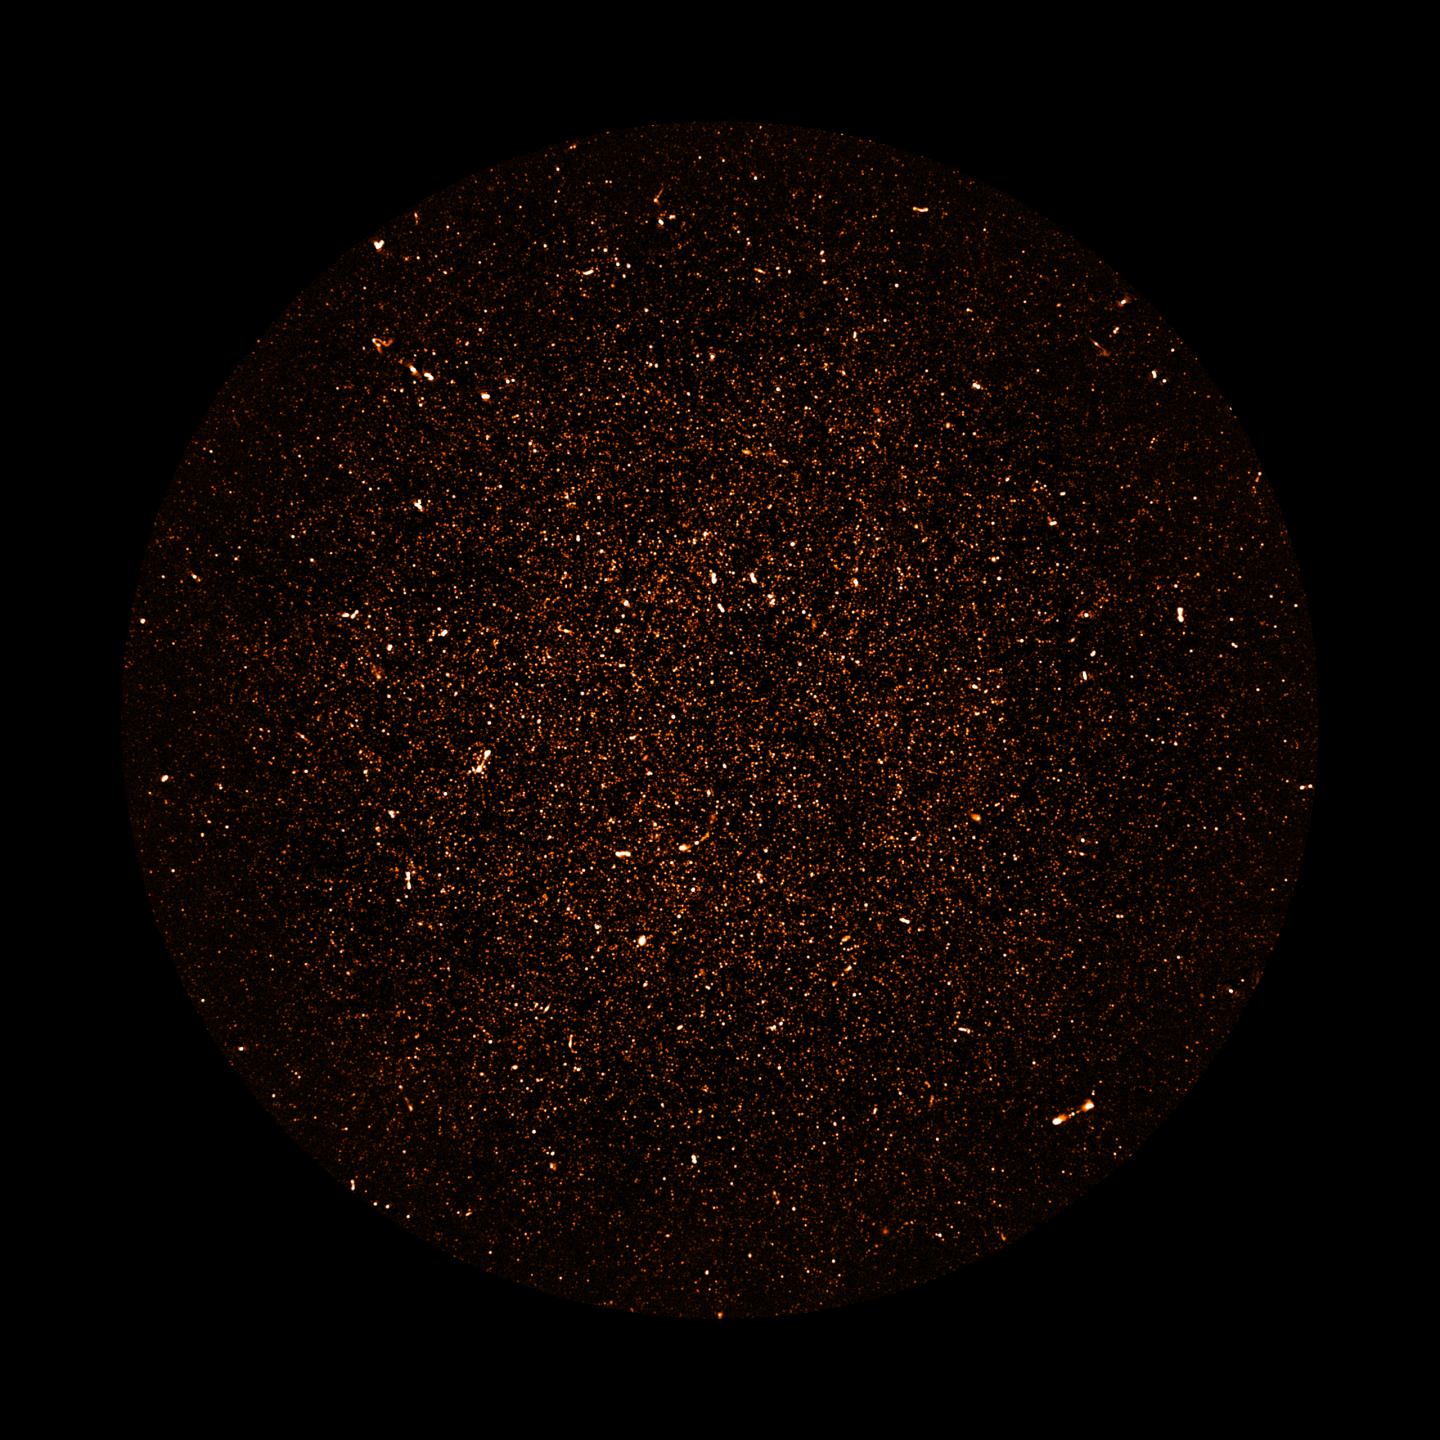 MeerKAT Image of Radio Galaxies